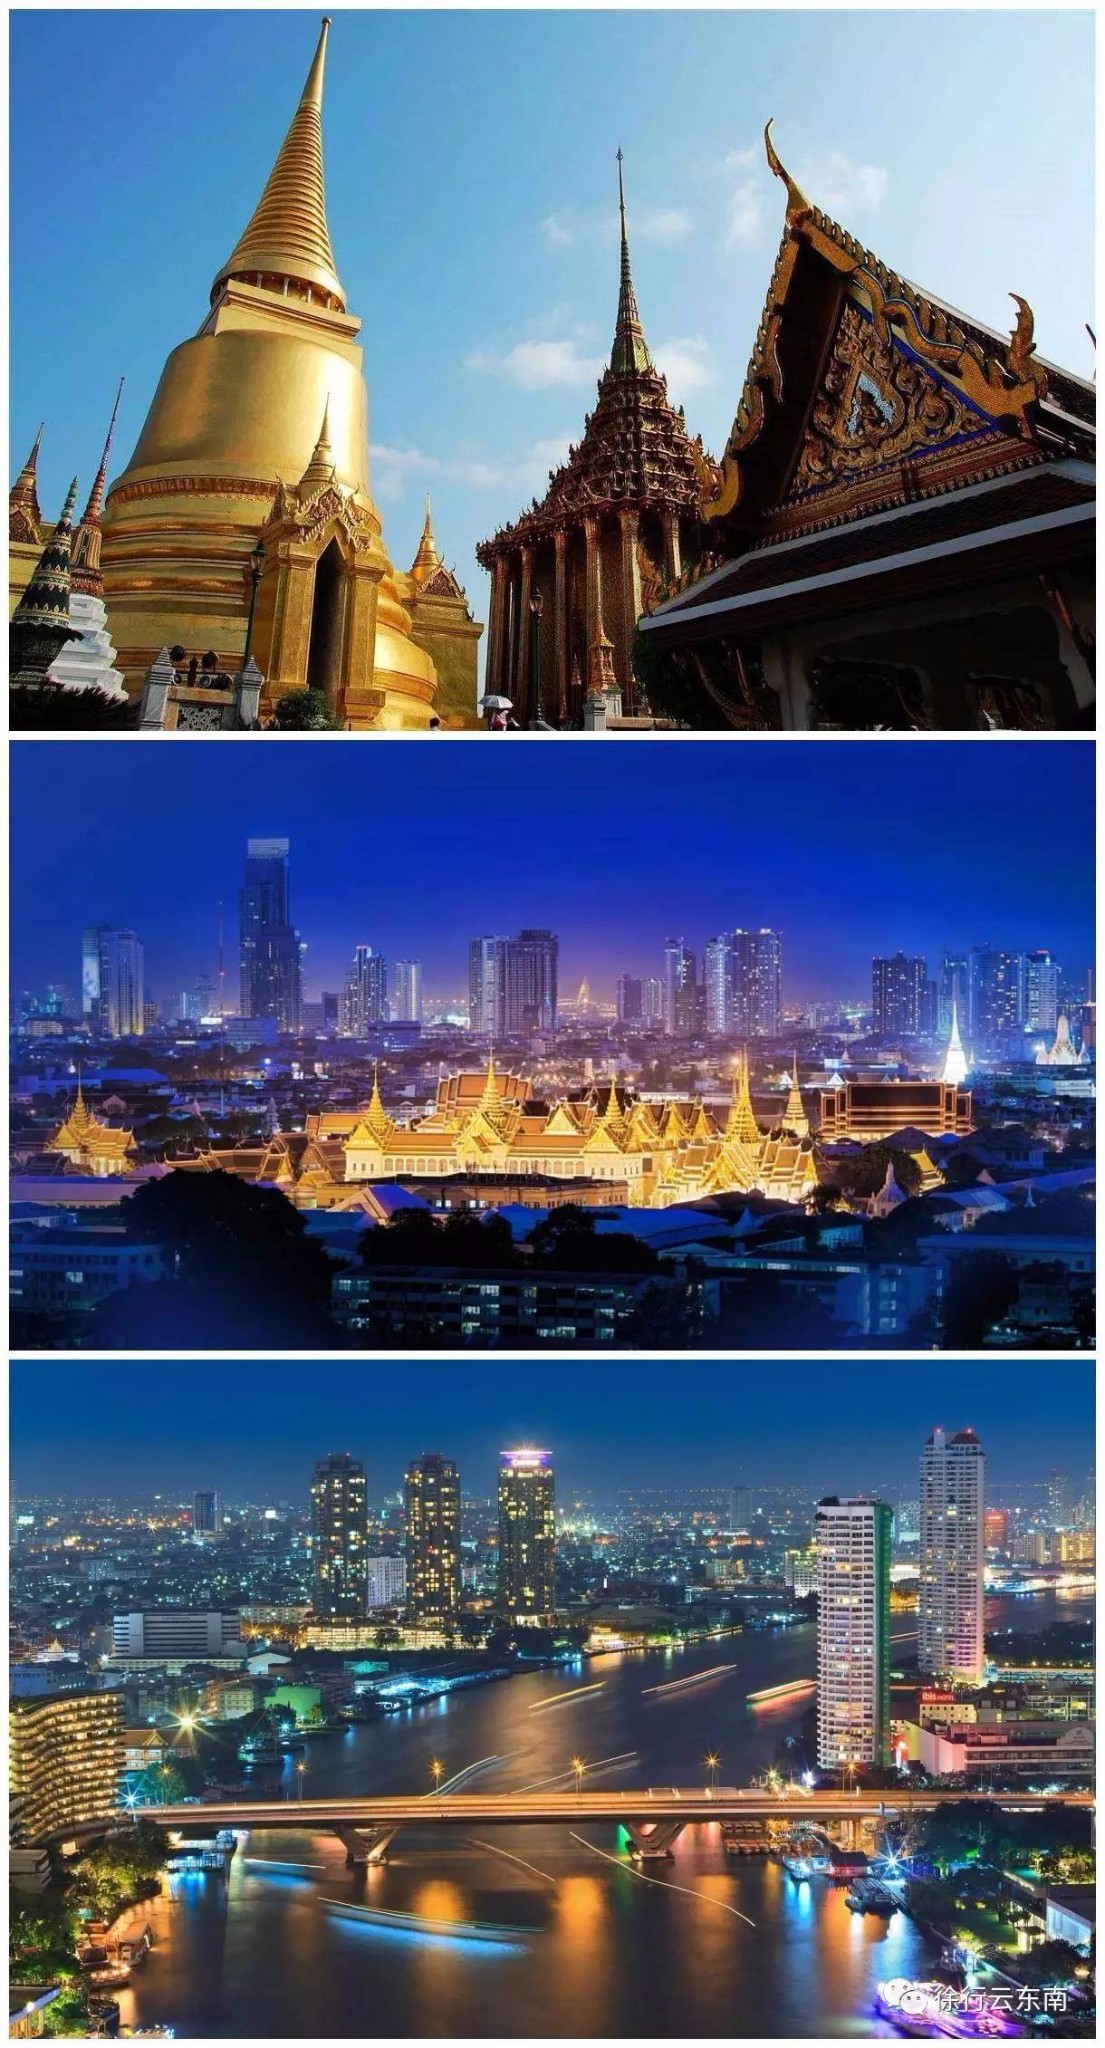 【泰精彩】泰国最受欢迎的十个景点推荐